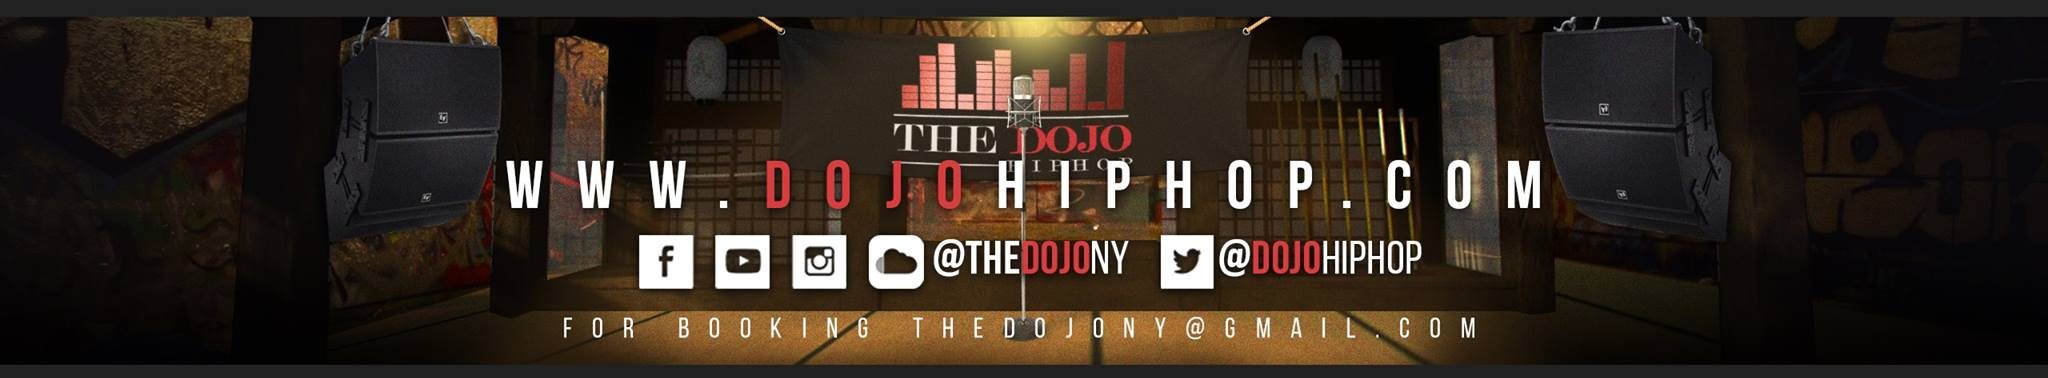 The Dojo Hiphop